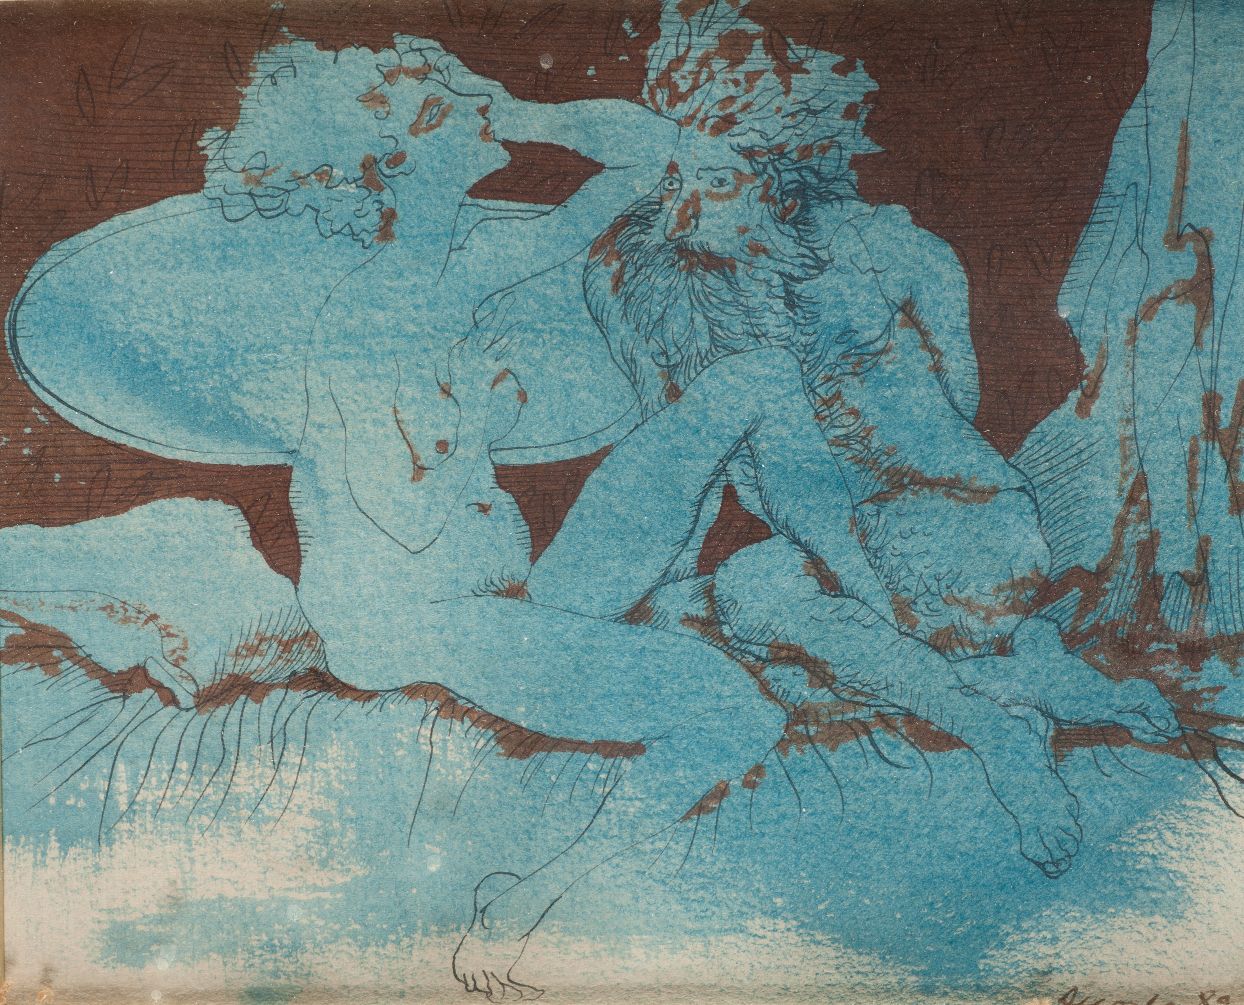 MANUEL ALCORLO BARRERA (1935 / .) "Untitled", 1989 右下角有签名和日期 纸上混合媒体。14 x 18 cm